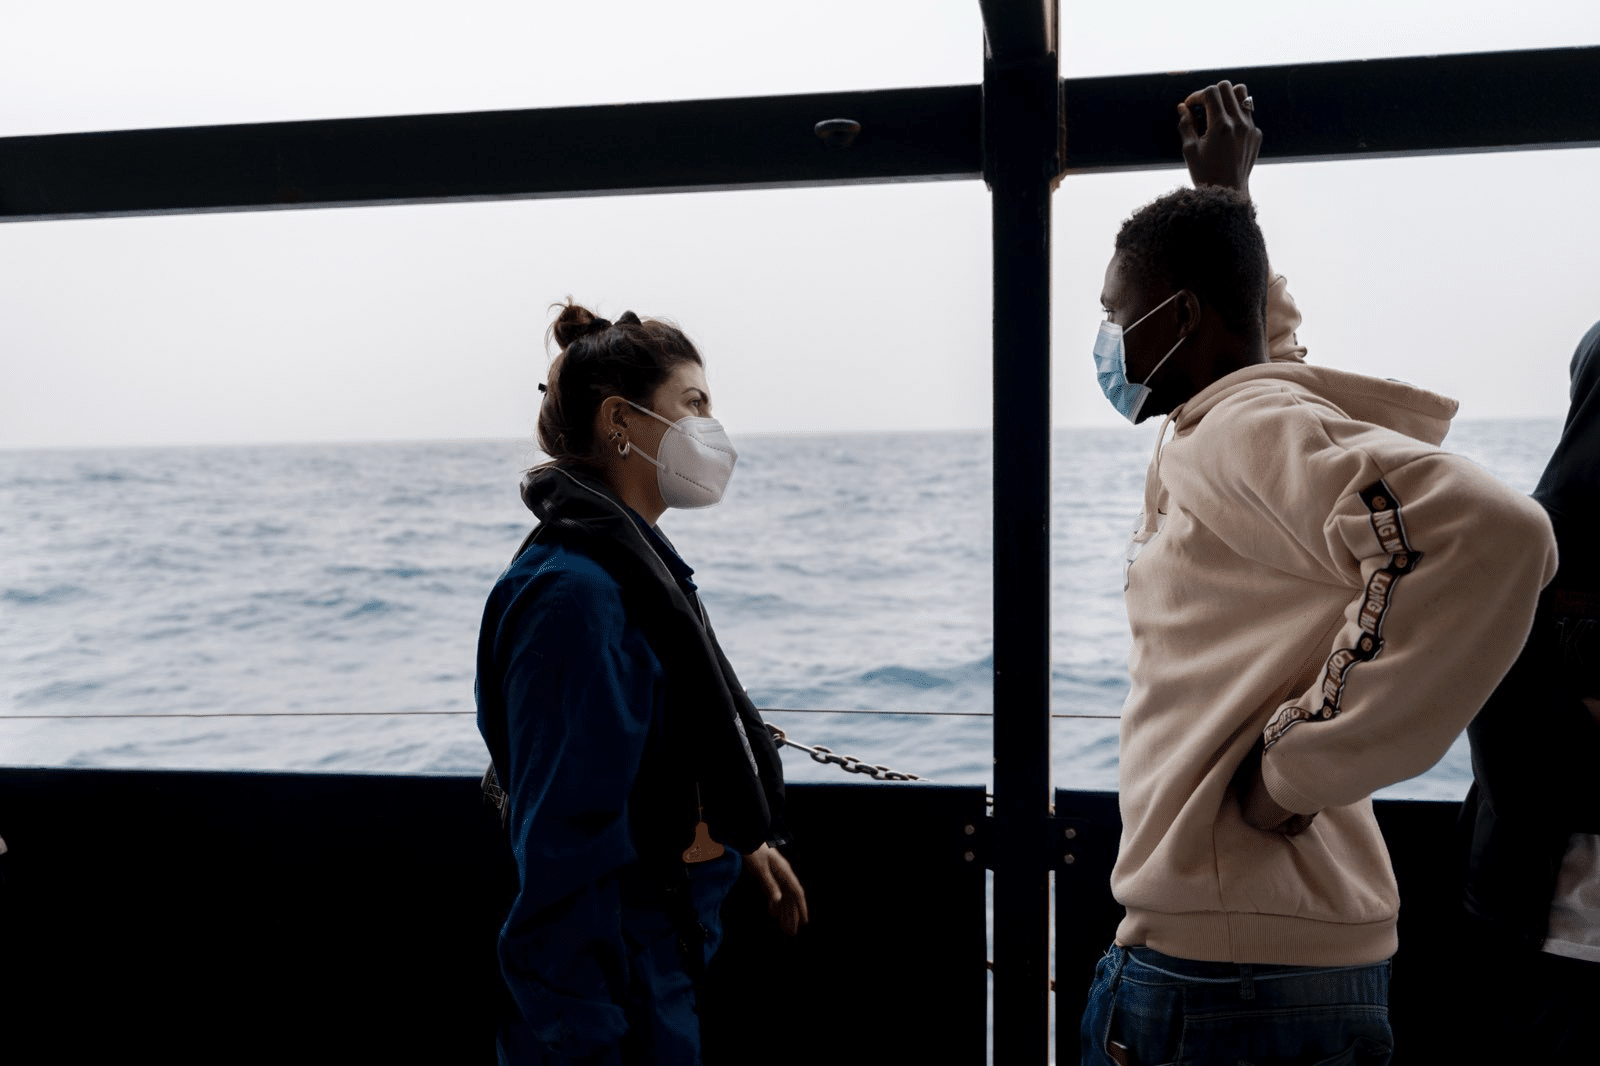 rachele von seewatch im gespräch an bord eines schiffes. sie und der gesprächspartner tragen atemschutz-masken.